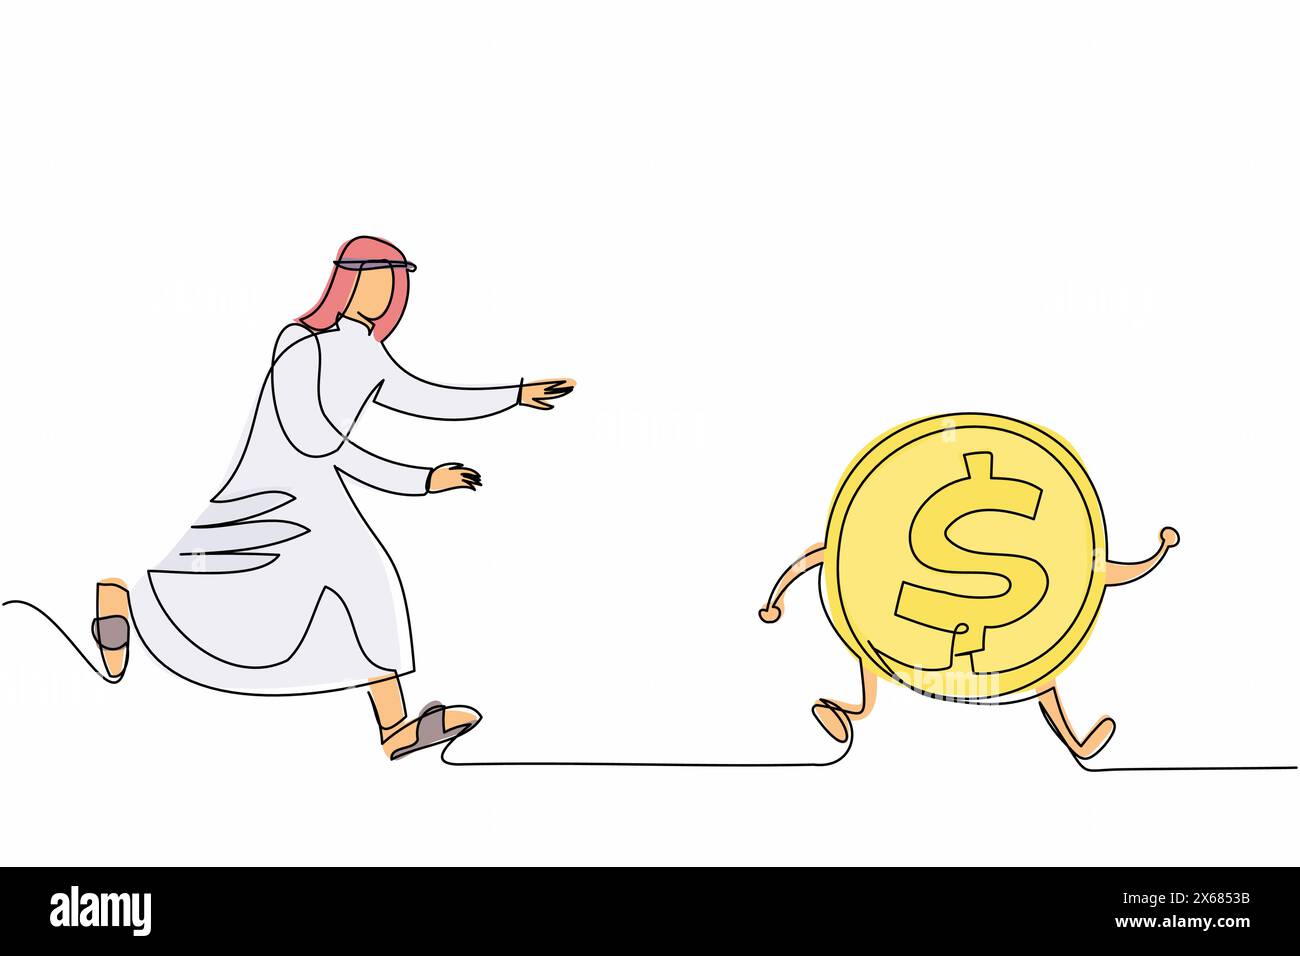 Eine durchgehende Linie, die arabische Geschäftsmann auf der Jagd nach Dollarmünze zeichnet. Nach Erfolg streben, Träume verfolgen, Profit machen. Holen Sie sich so viel Geld wie möglich Stock Vektor